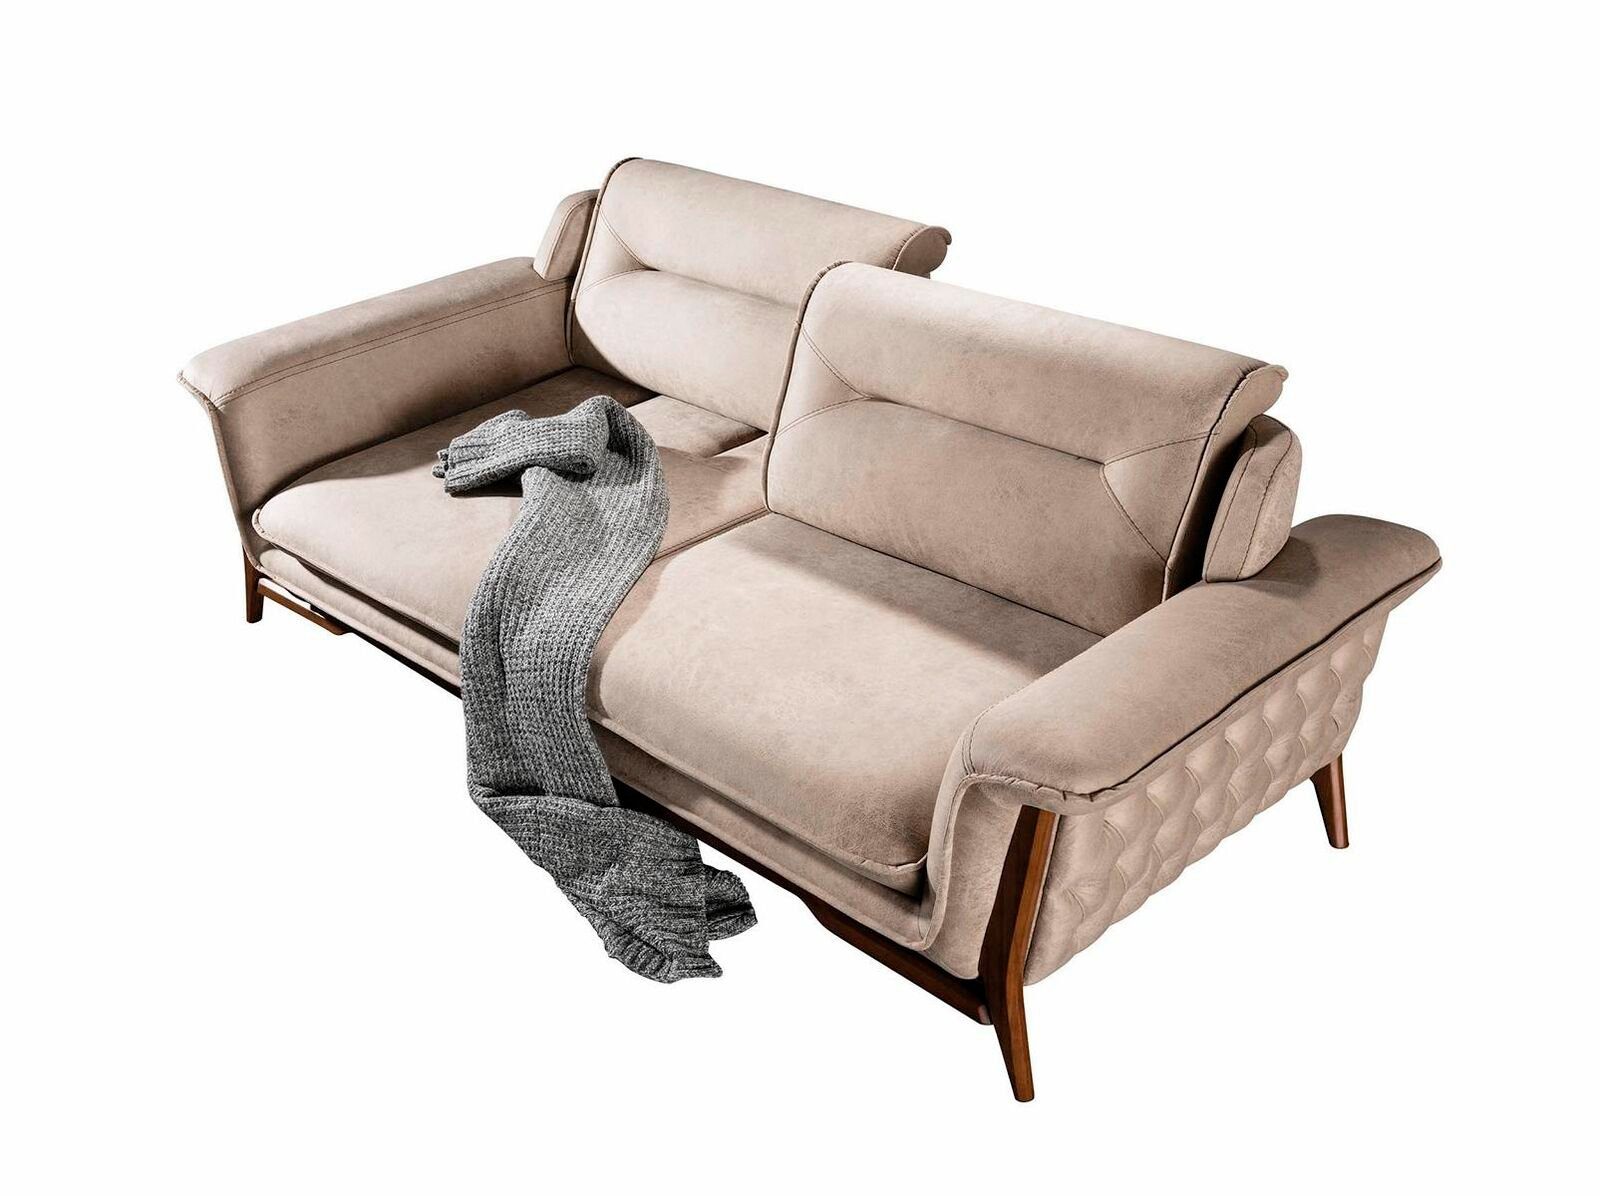 JVmoebel Sofa Beiger Dreisitzer 1 Moderne Teile, Couch Design, Stilvolles in Made Europe Luxus Sofa 3-Sitzer